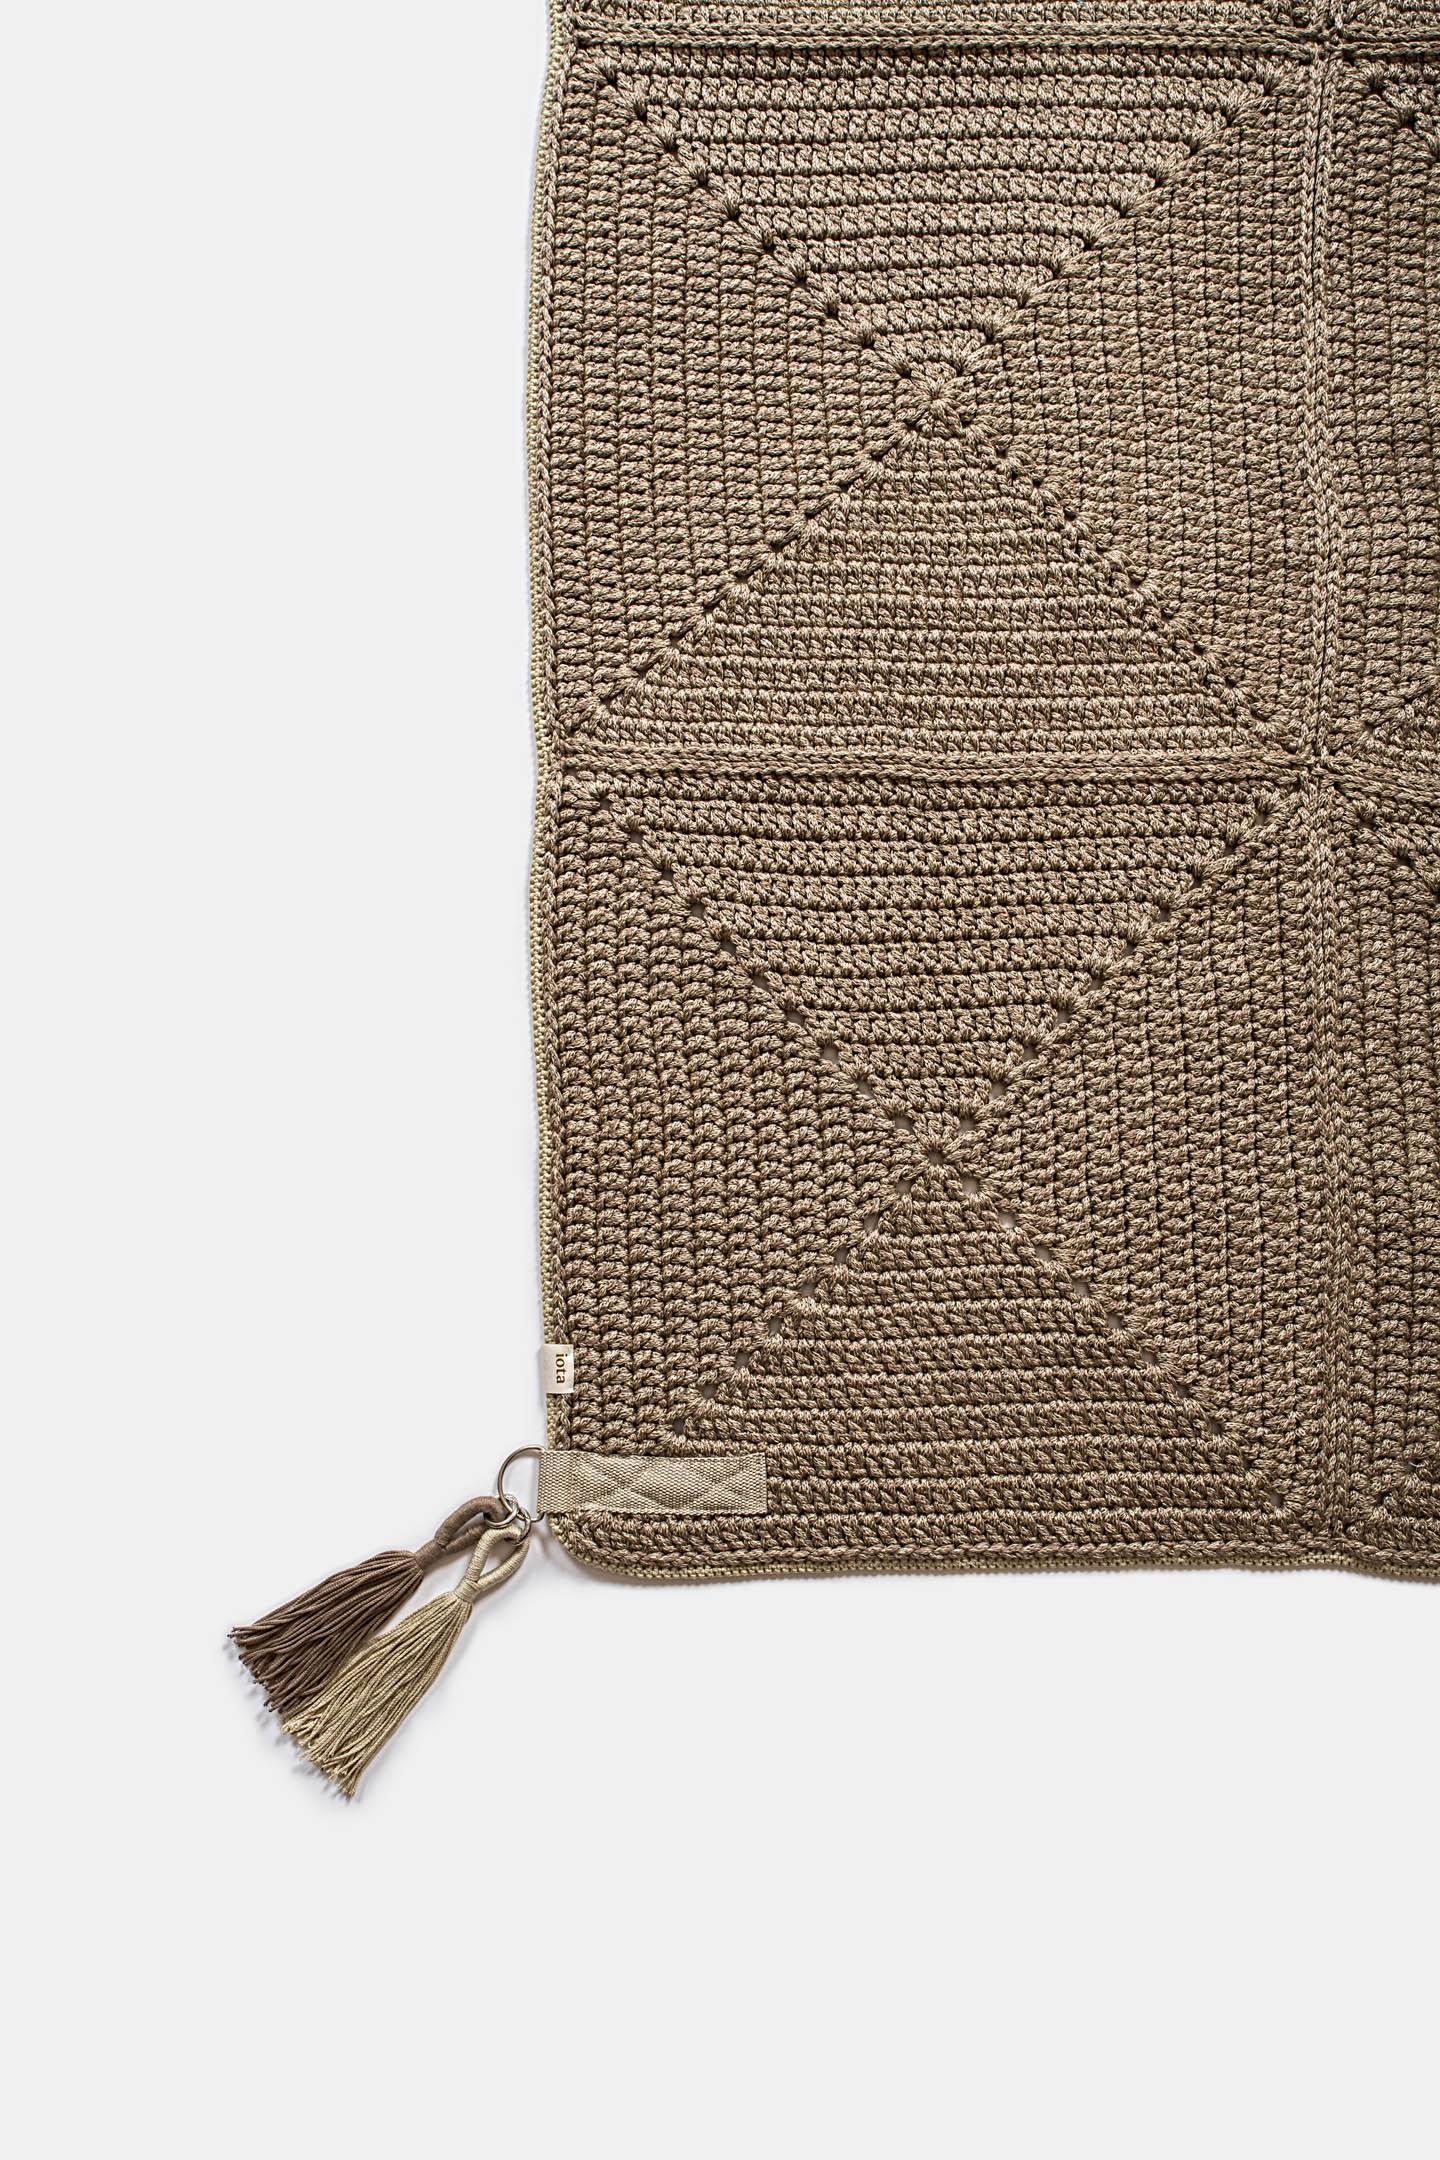 Israeli 21st Century Asian Brown Beige Outdoor Indoor 200x200 cm Handmade Crochet Rug For Sale